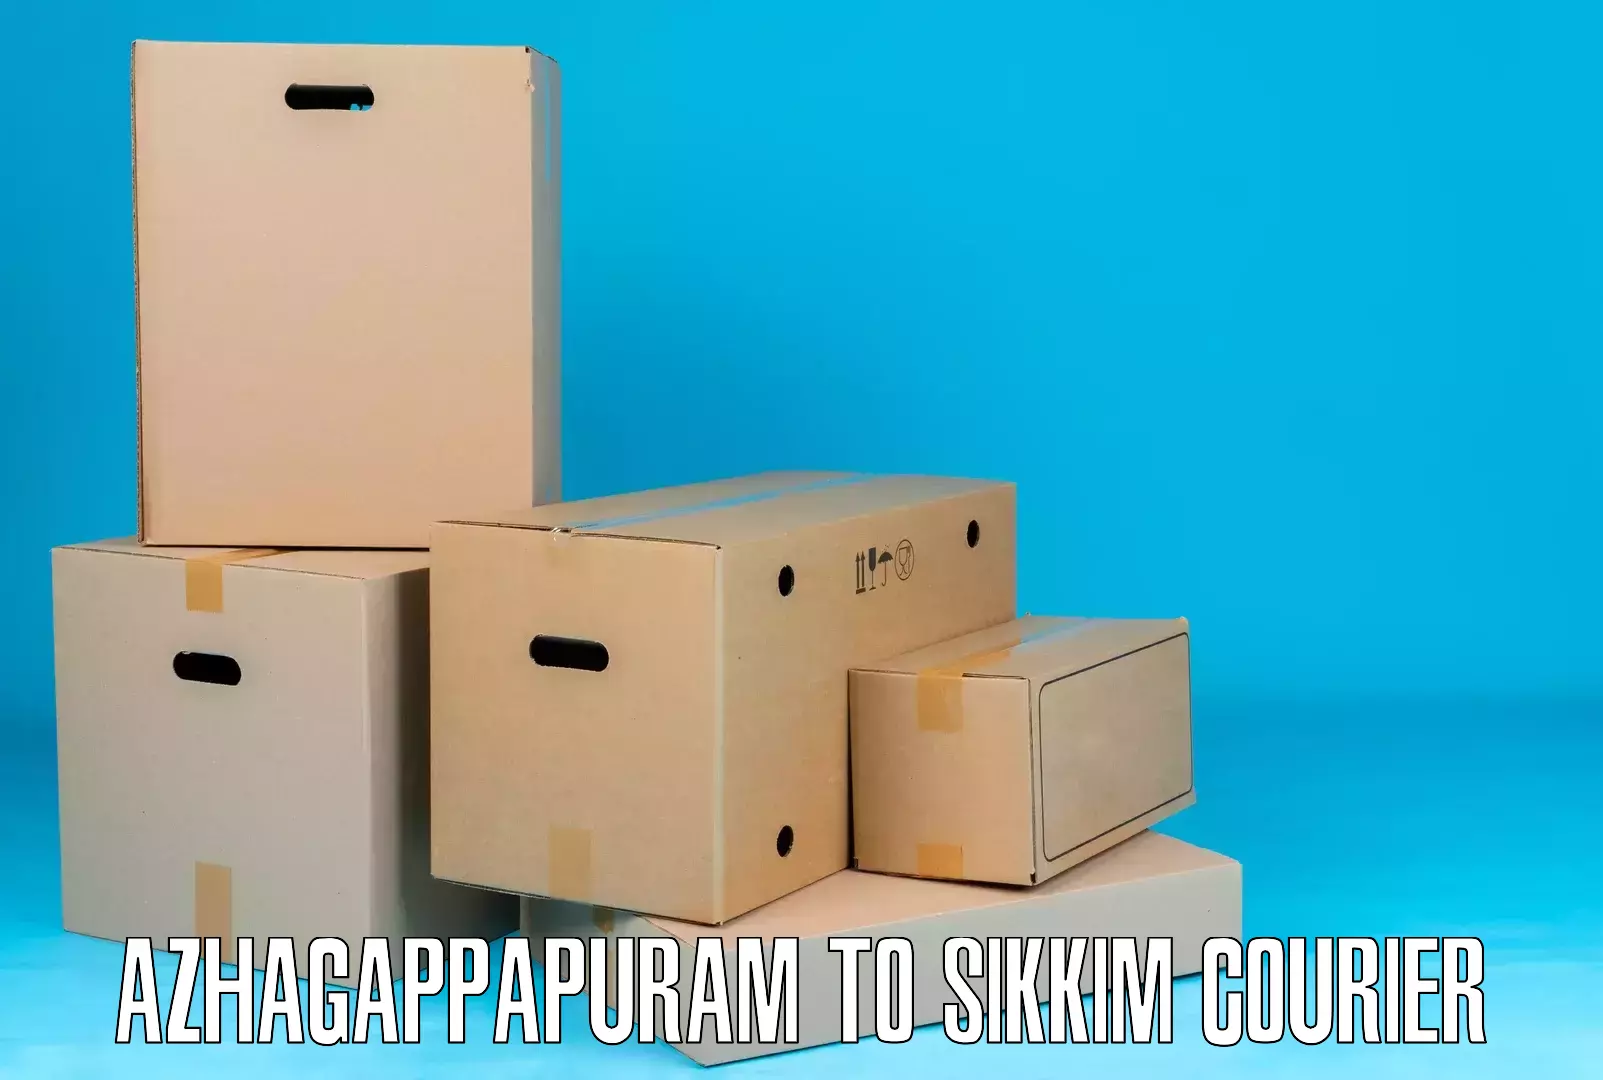 Custom courier packaging Azhagappapuram to Rangpo